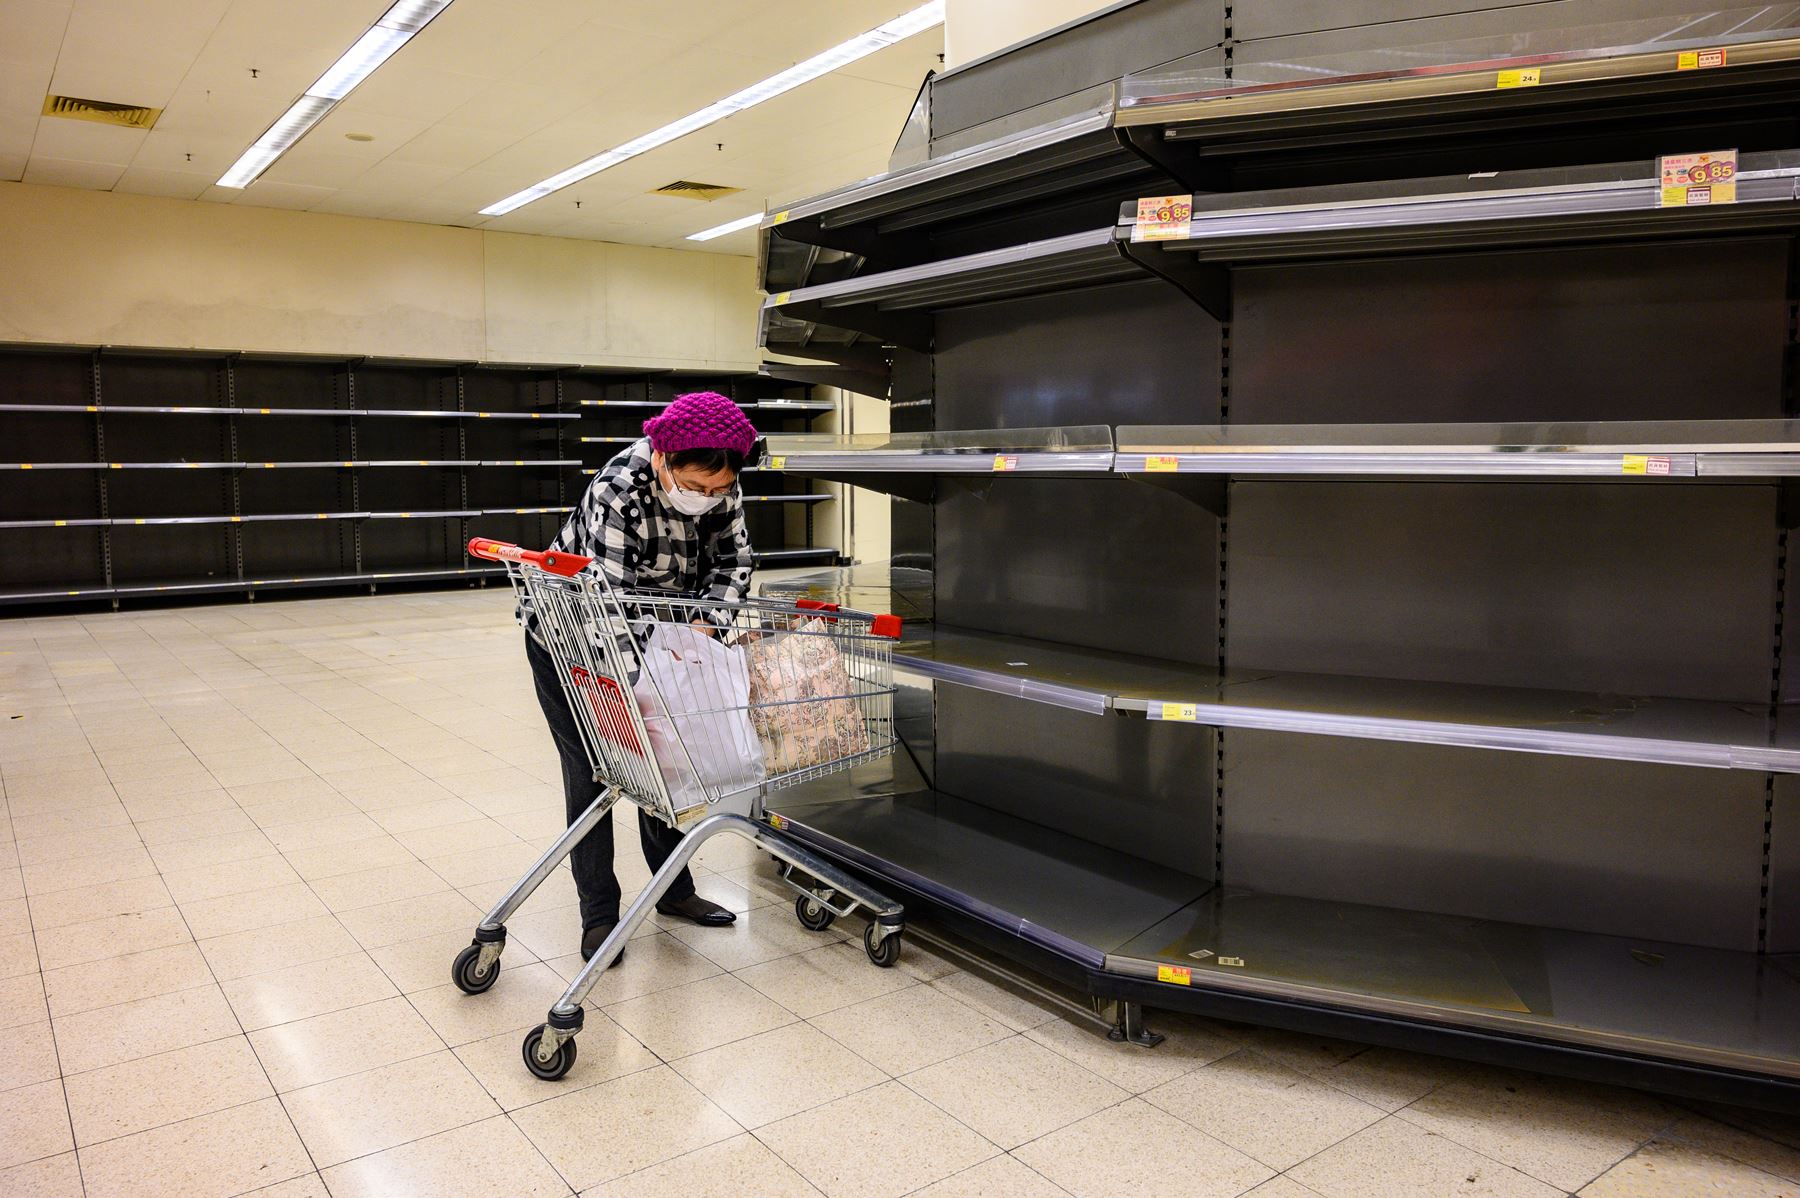 Una mujer que lleva una mascarilla protectora clasifica los artículos en su carrito mientras se observa los estantes vacíos del supermercado. Foto: AFP